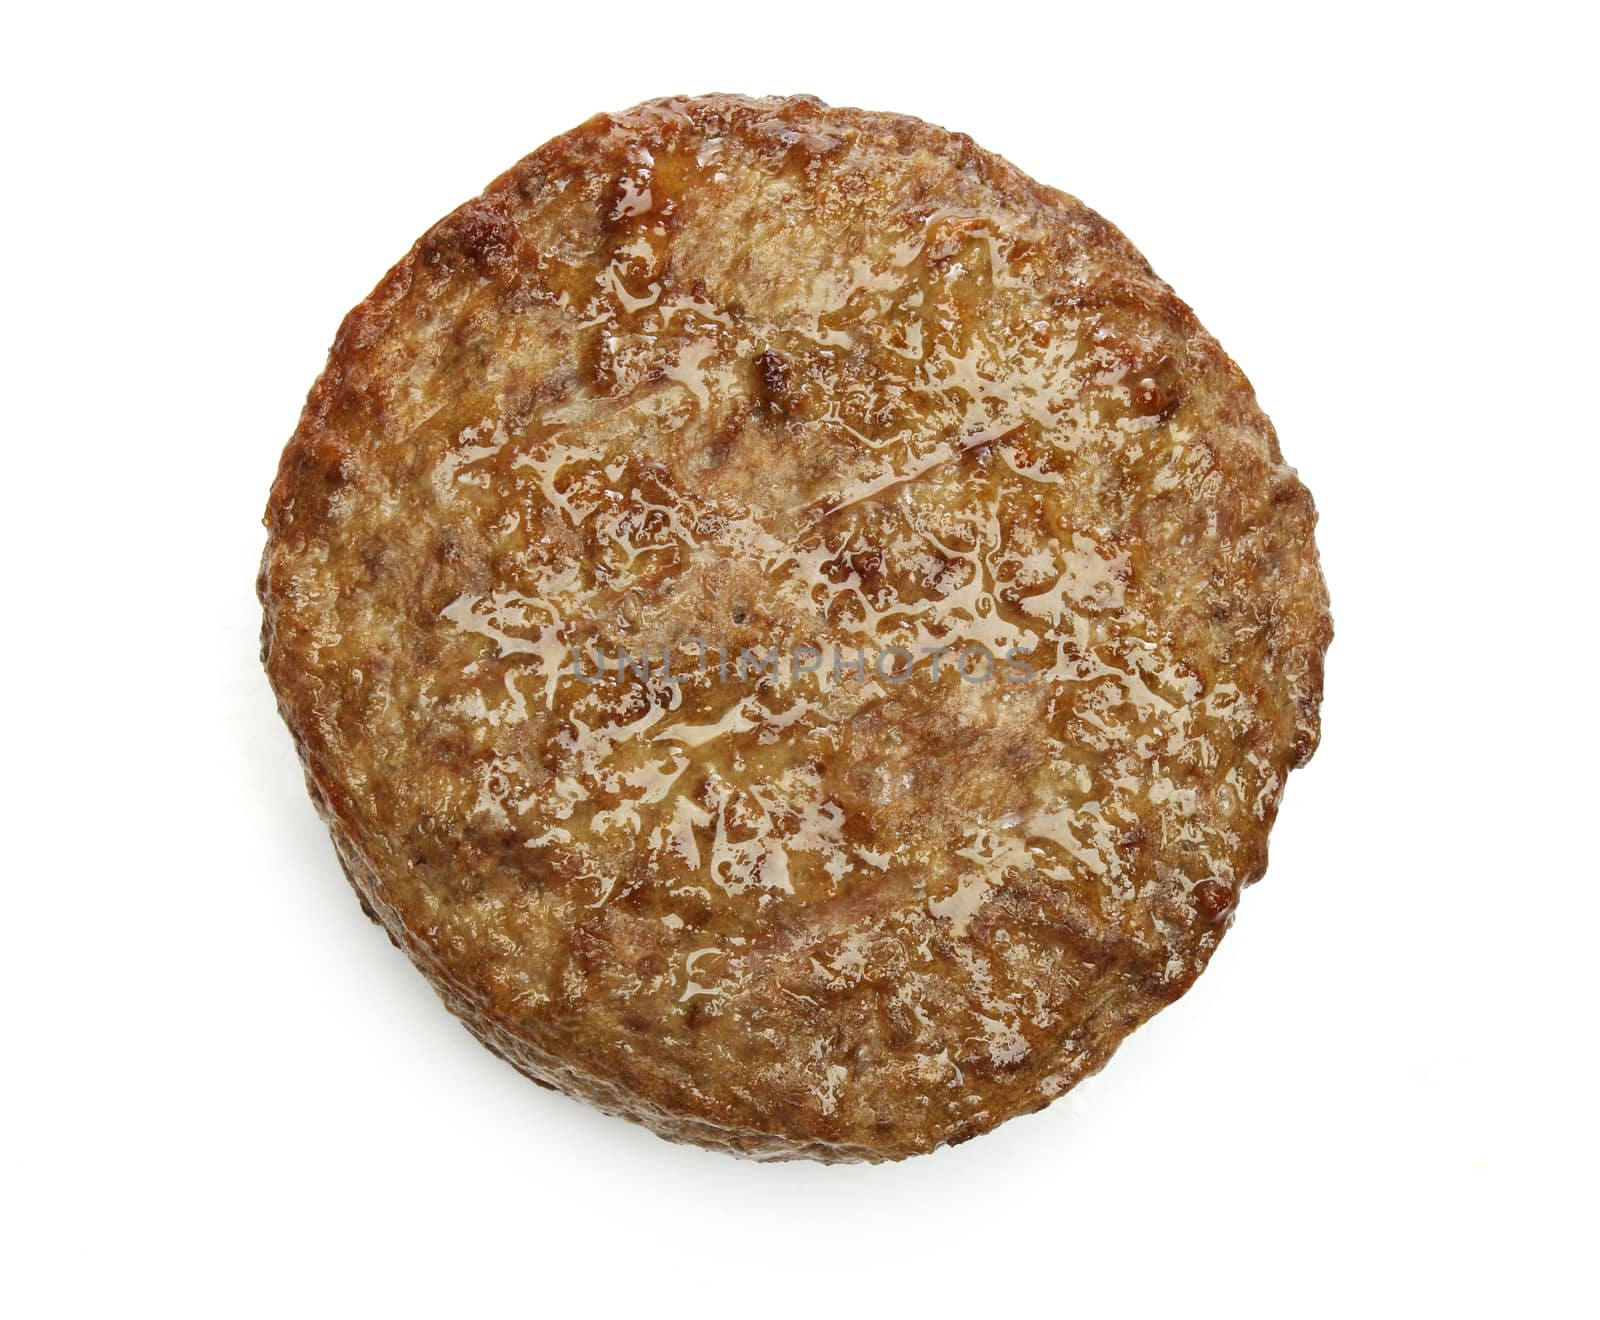 Grilled hamburger isolated on white background